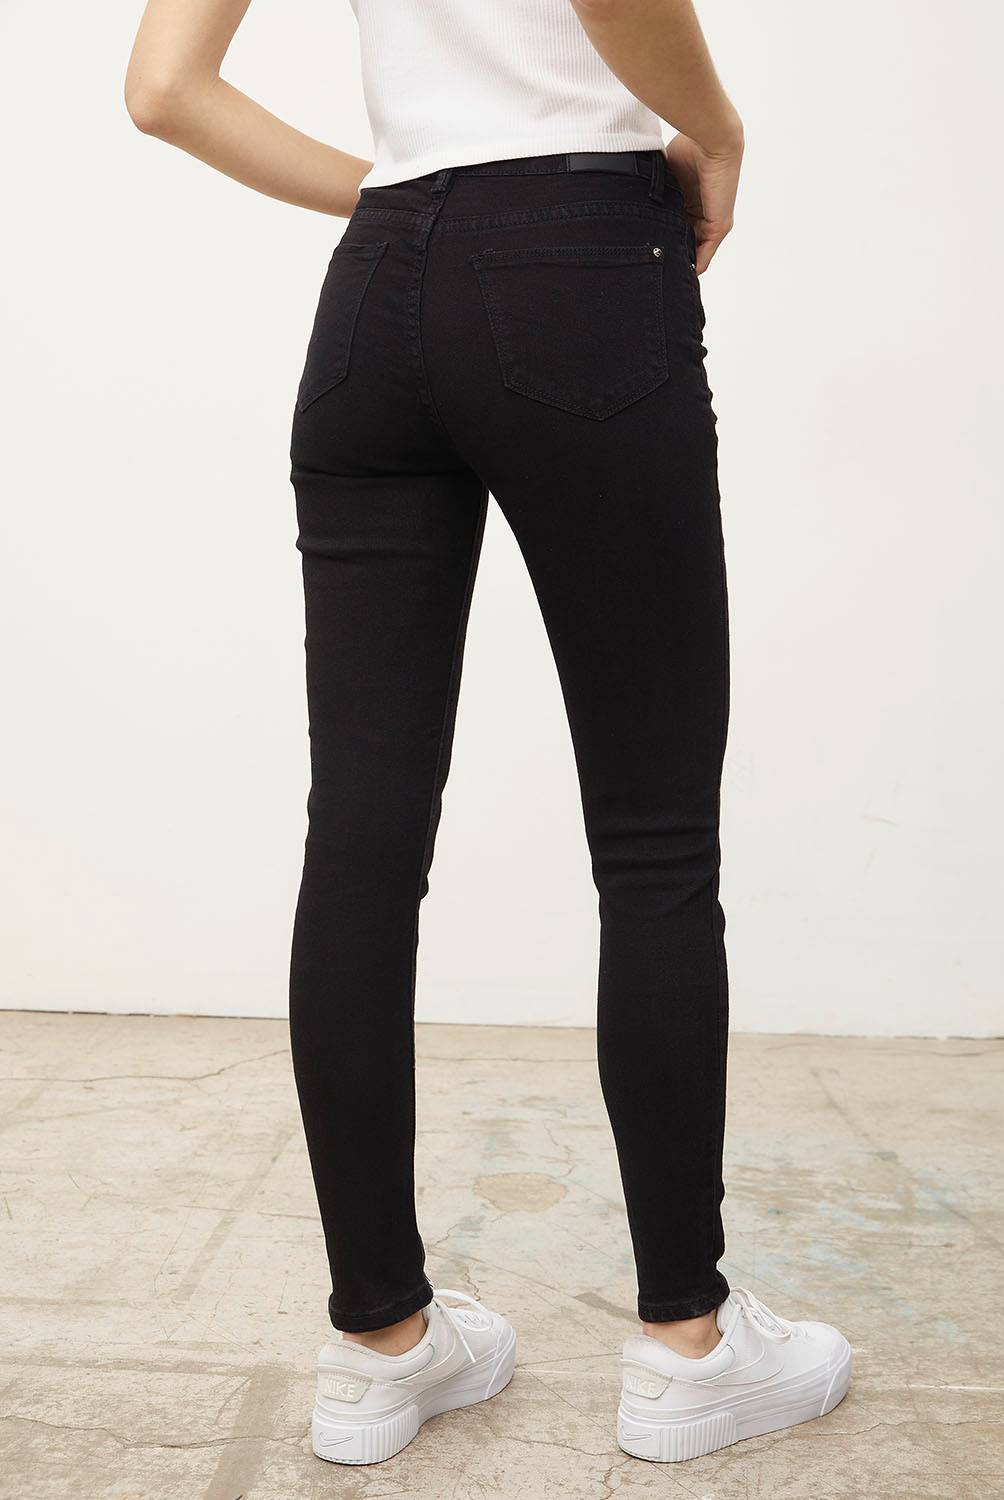 SYBILLA - Jeans Skinny Emily Tiro Medio Mujer Sybilla